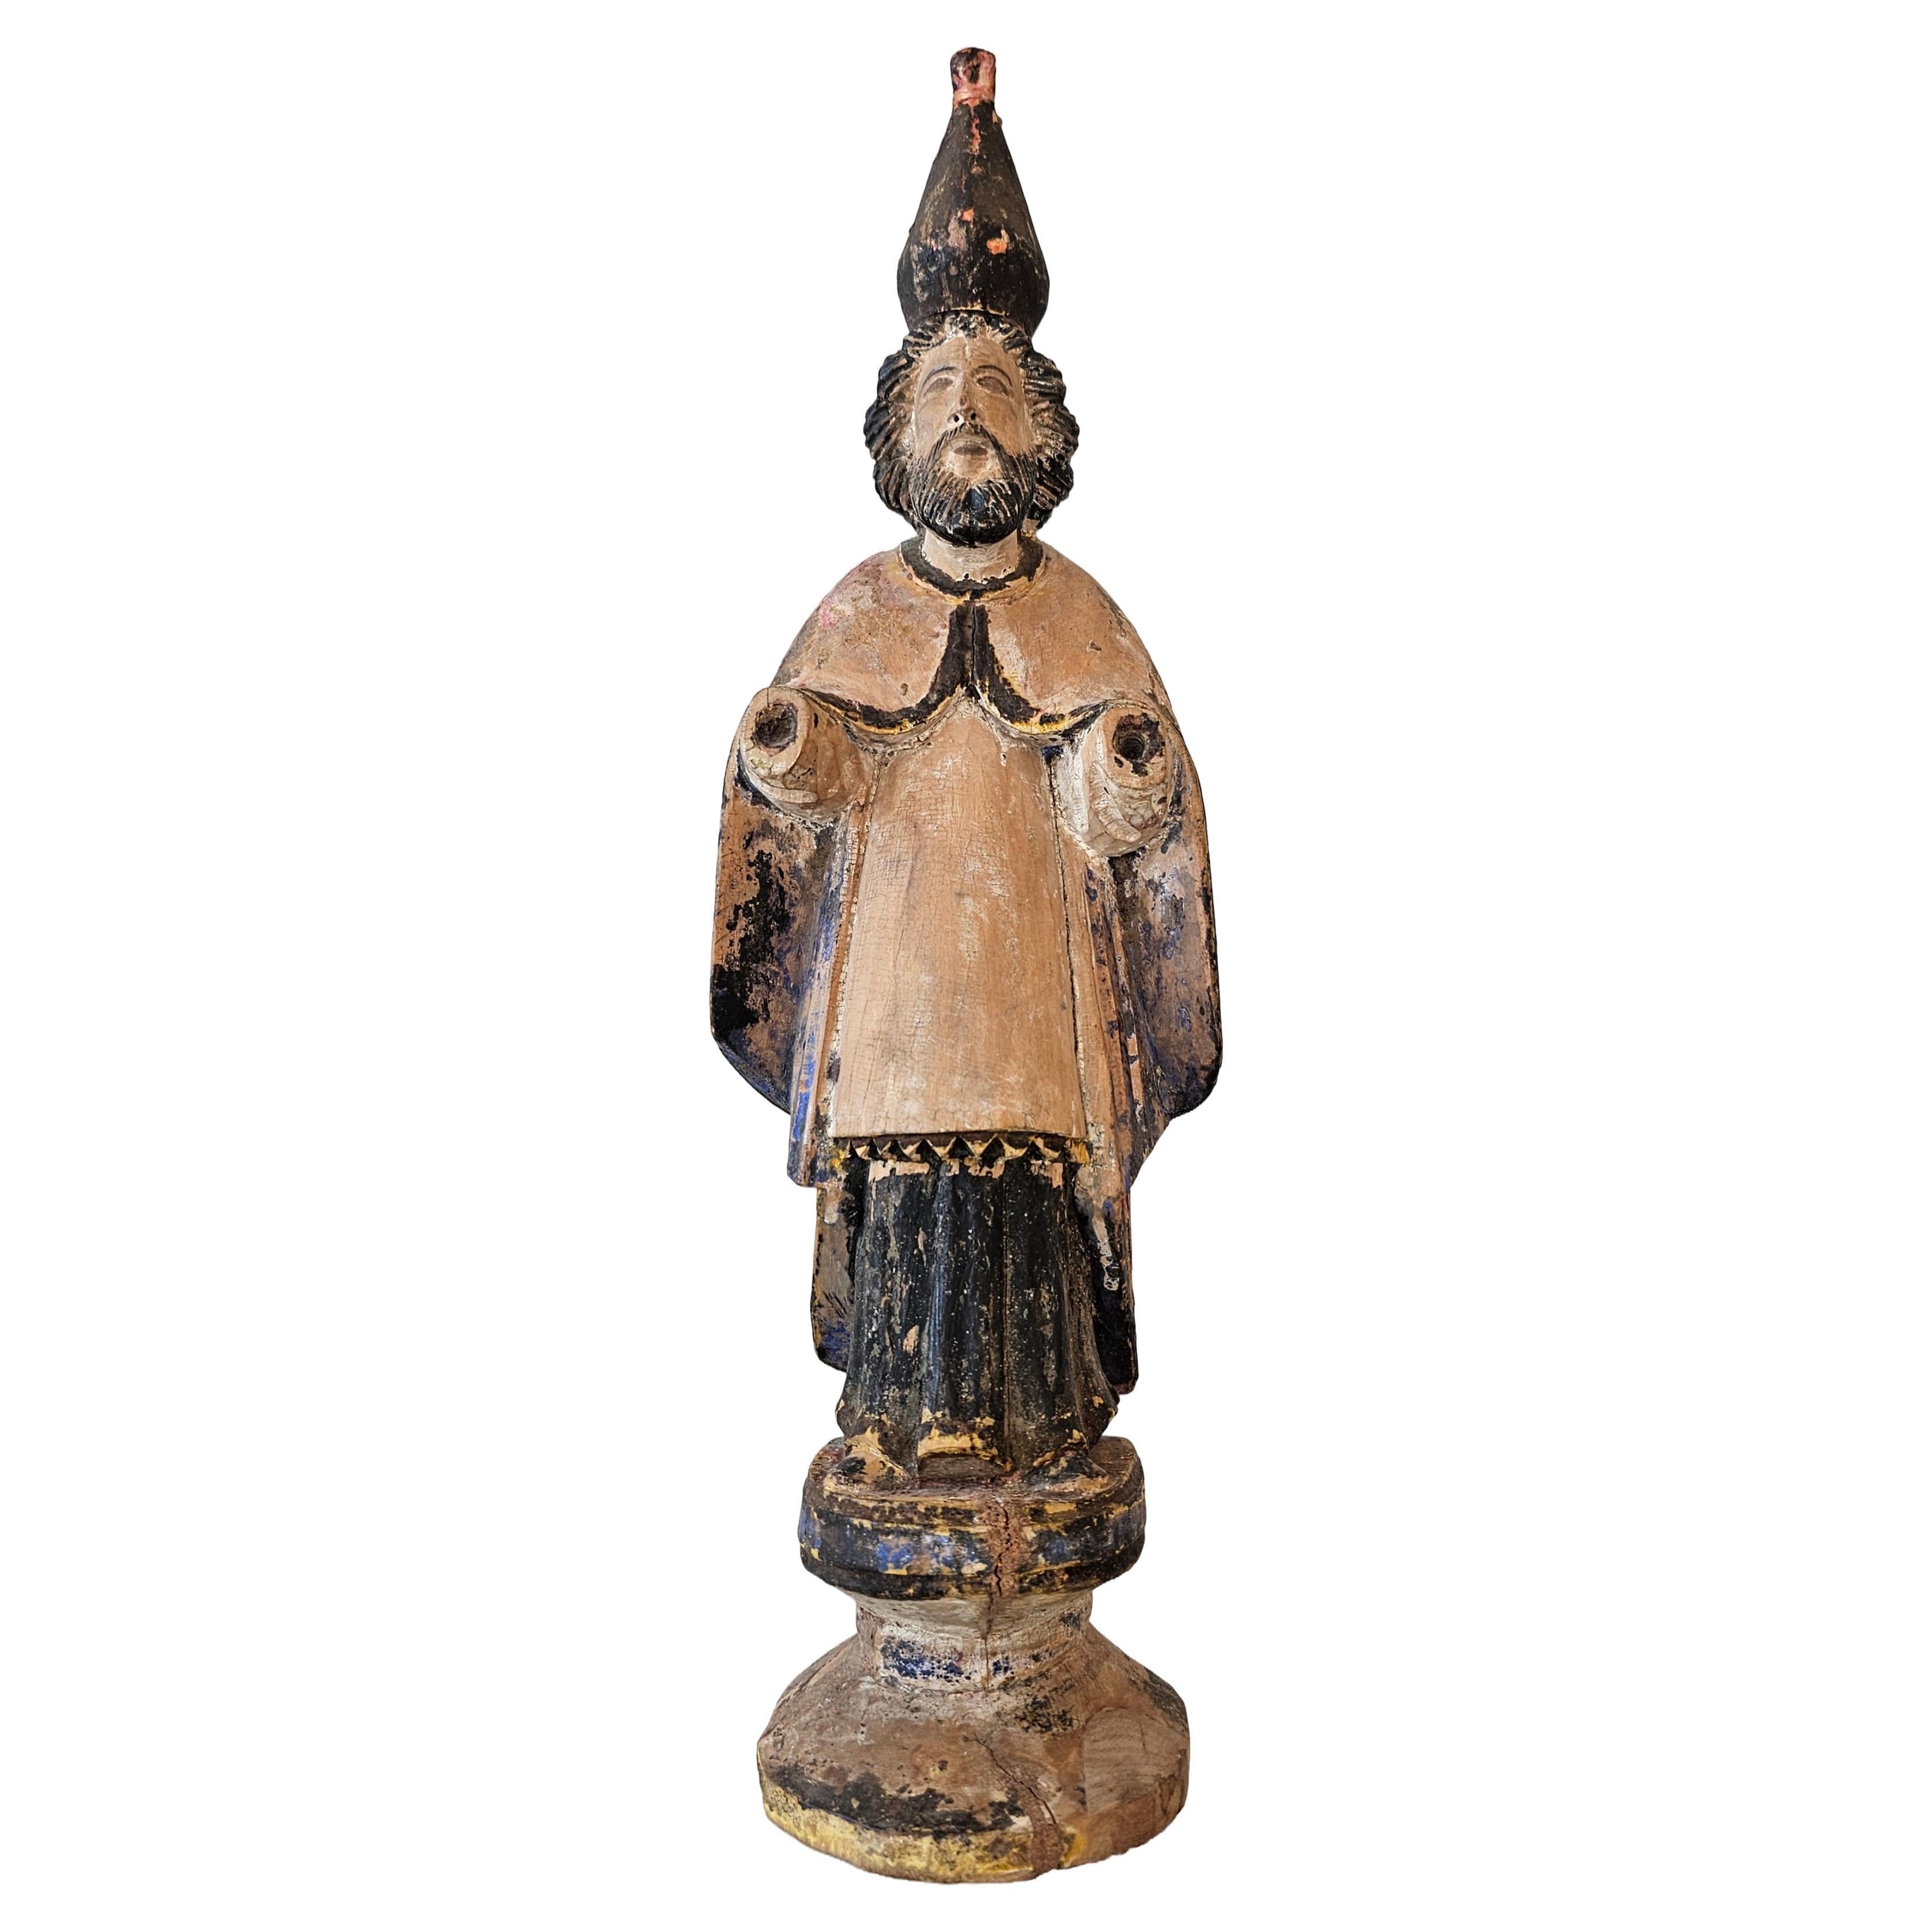 Ancienne figure d'autel saint hispano-Philippin colonial espagnol sculptée polychrome